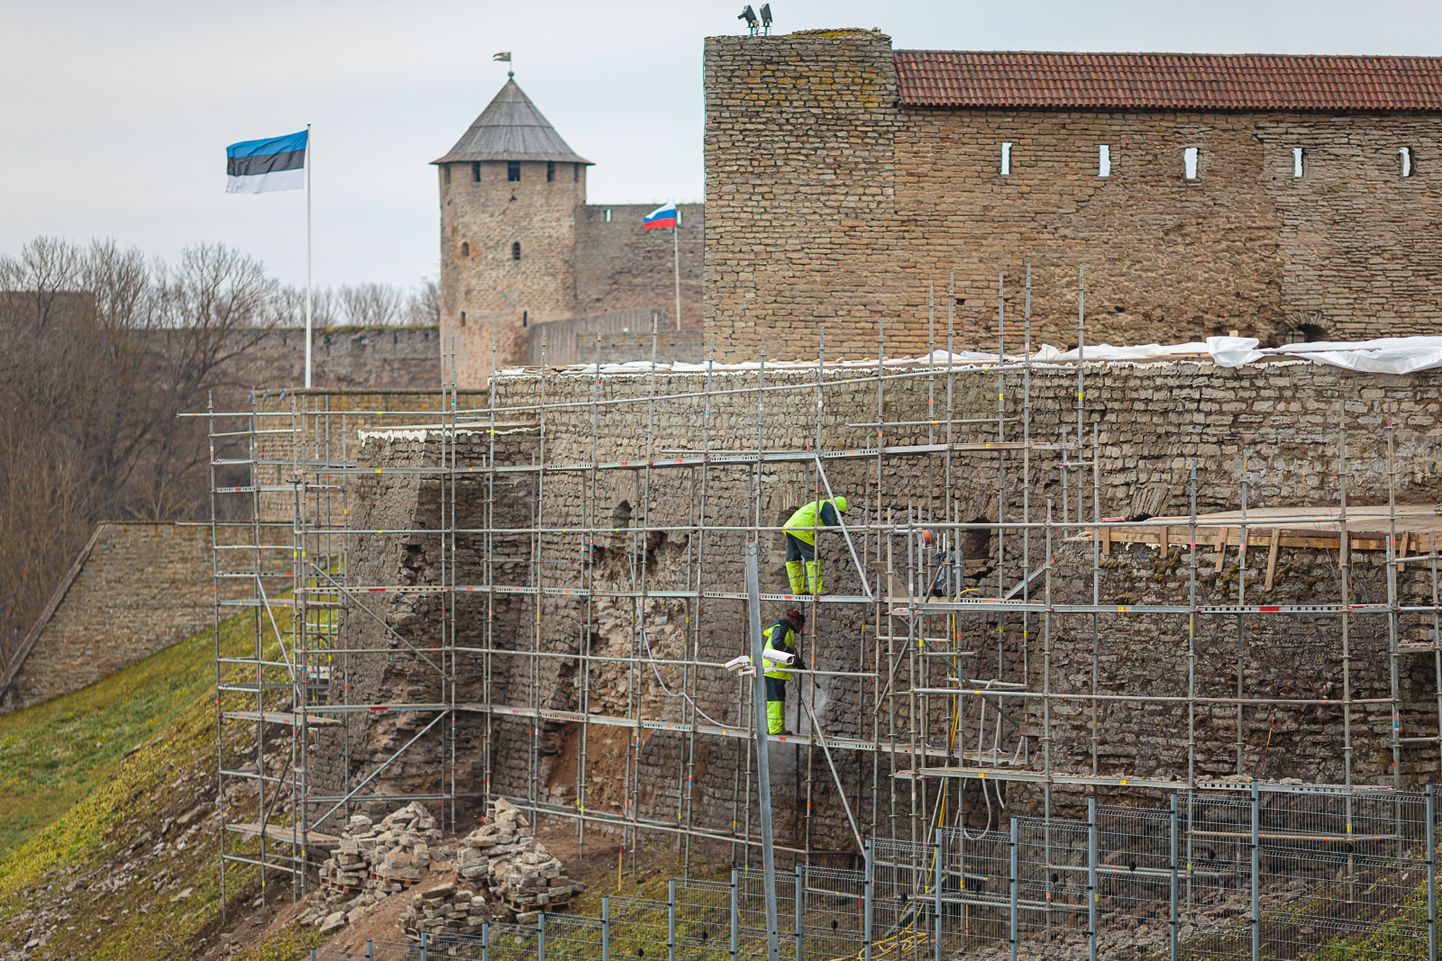 Viis aastat tagasi osaliselt lagunenud Narva linnuse põhjamüüri restaureerimine ja konserveerimine on üks osa suurest Eesti−Vene piiriülese koostöö projektist.